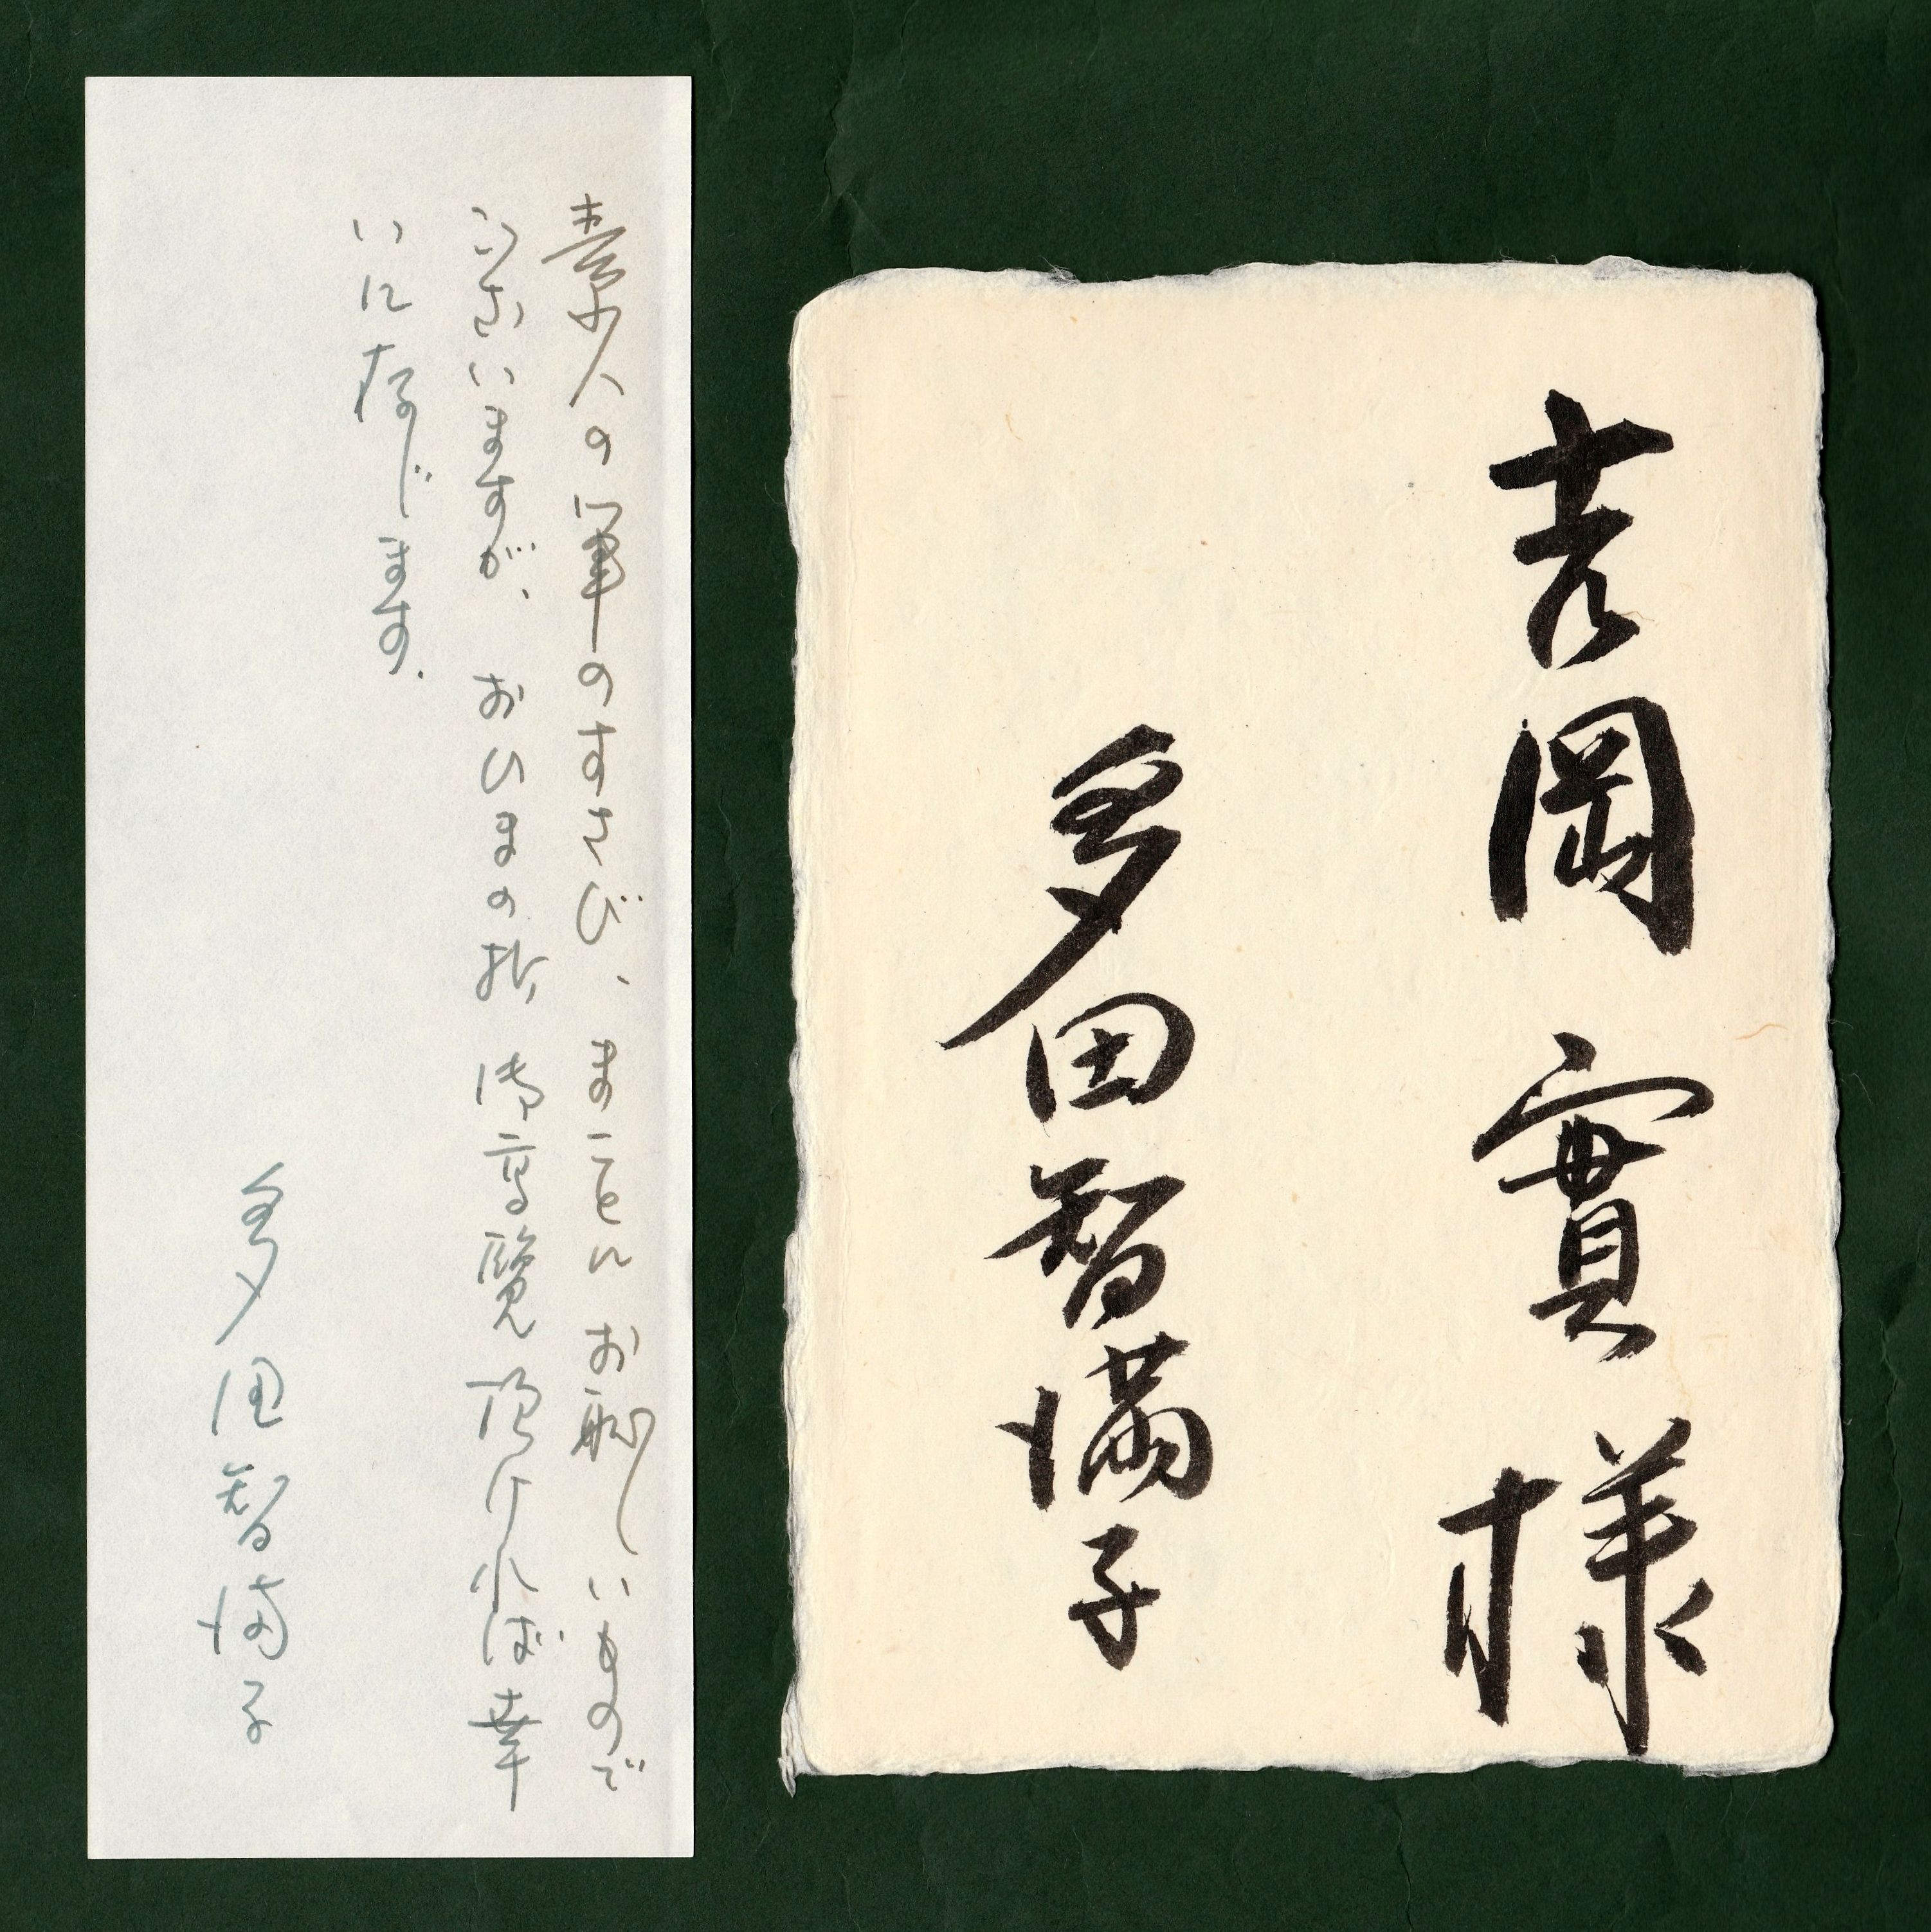 多田智満子の歌集《水烟〔著者本〕》に添えられた吉岡実への書状（ペン書き）と献呈署名（筆書き）